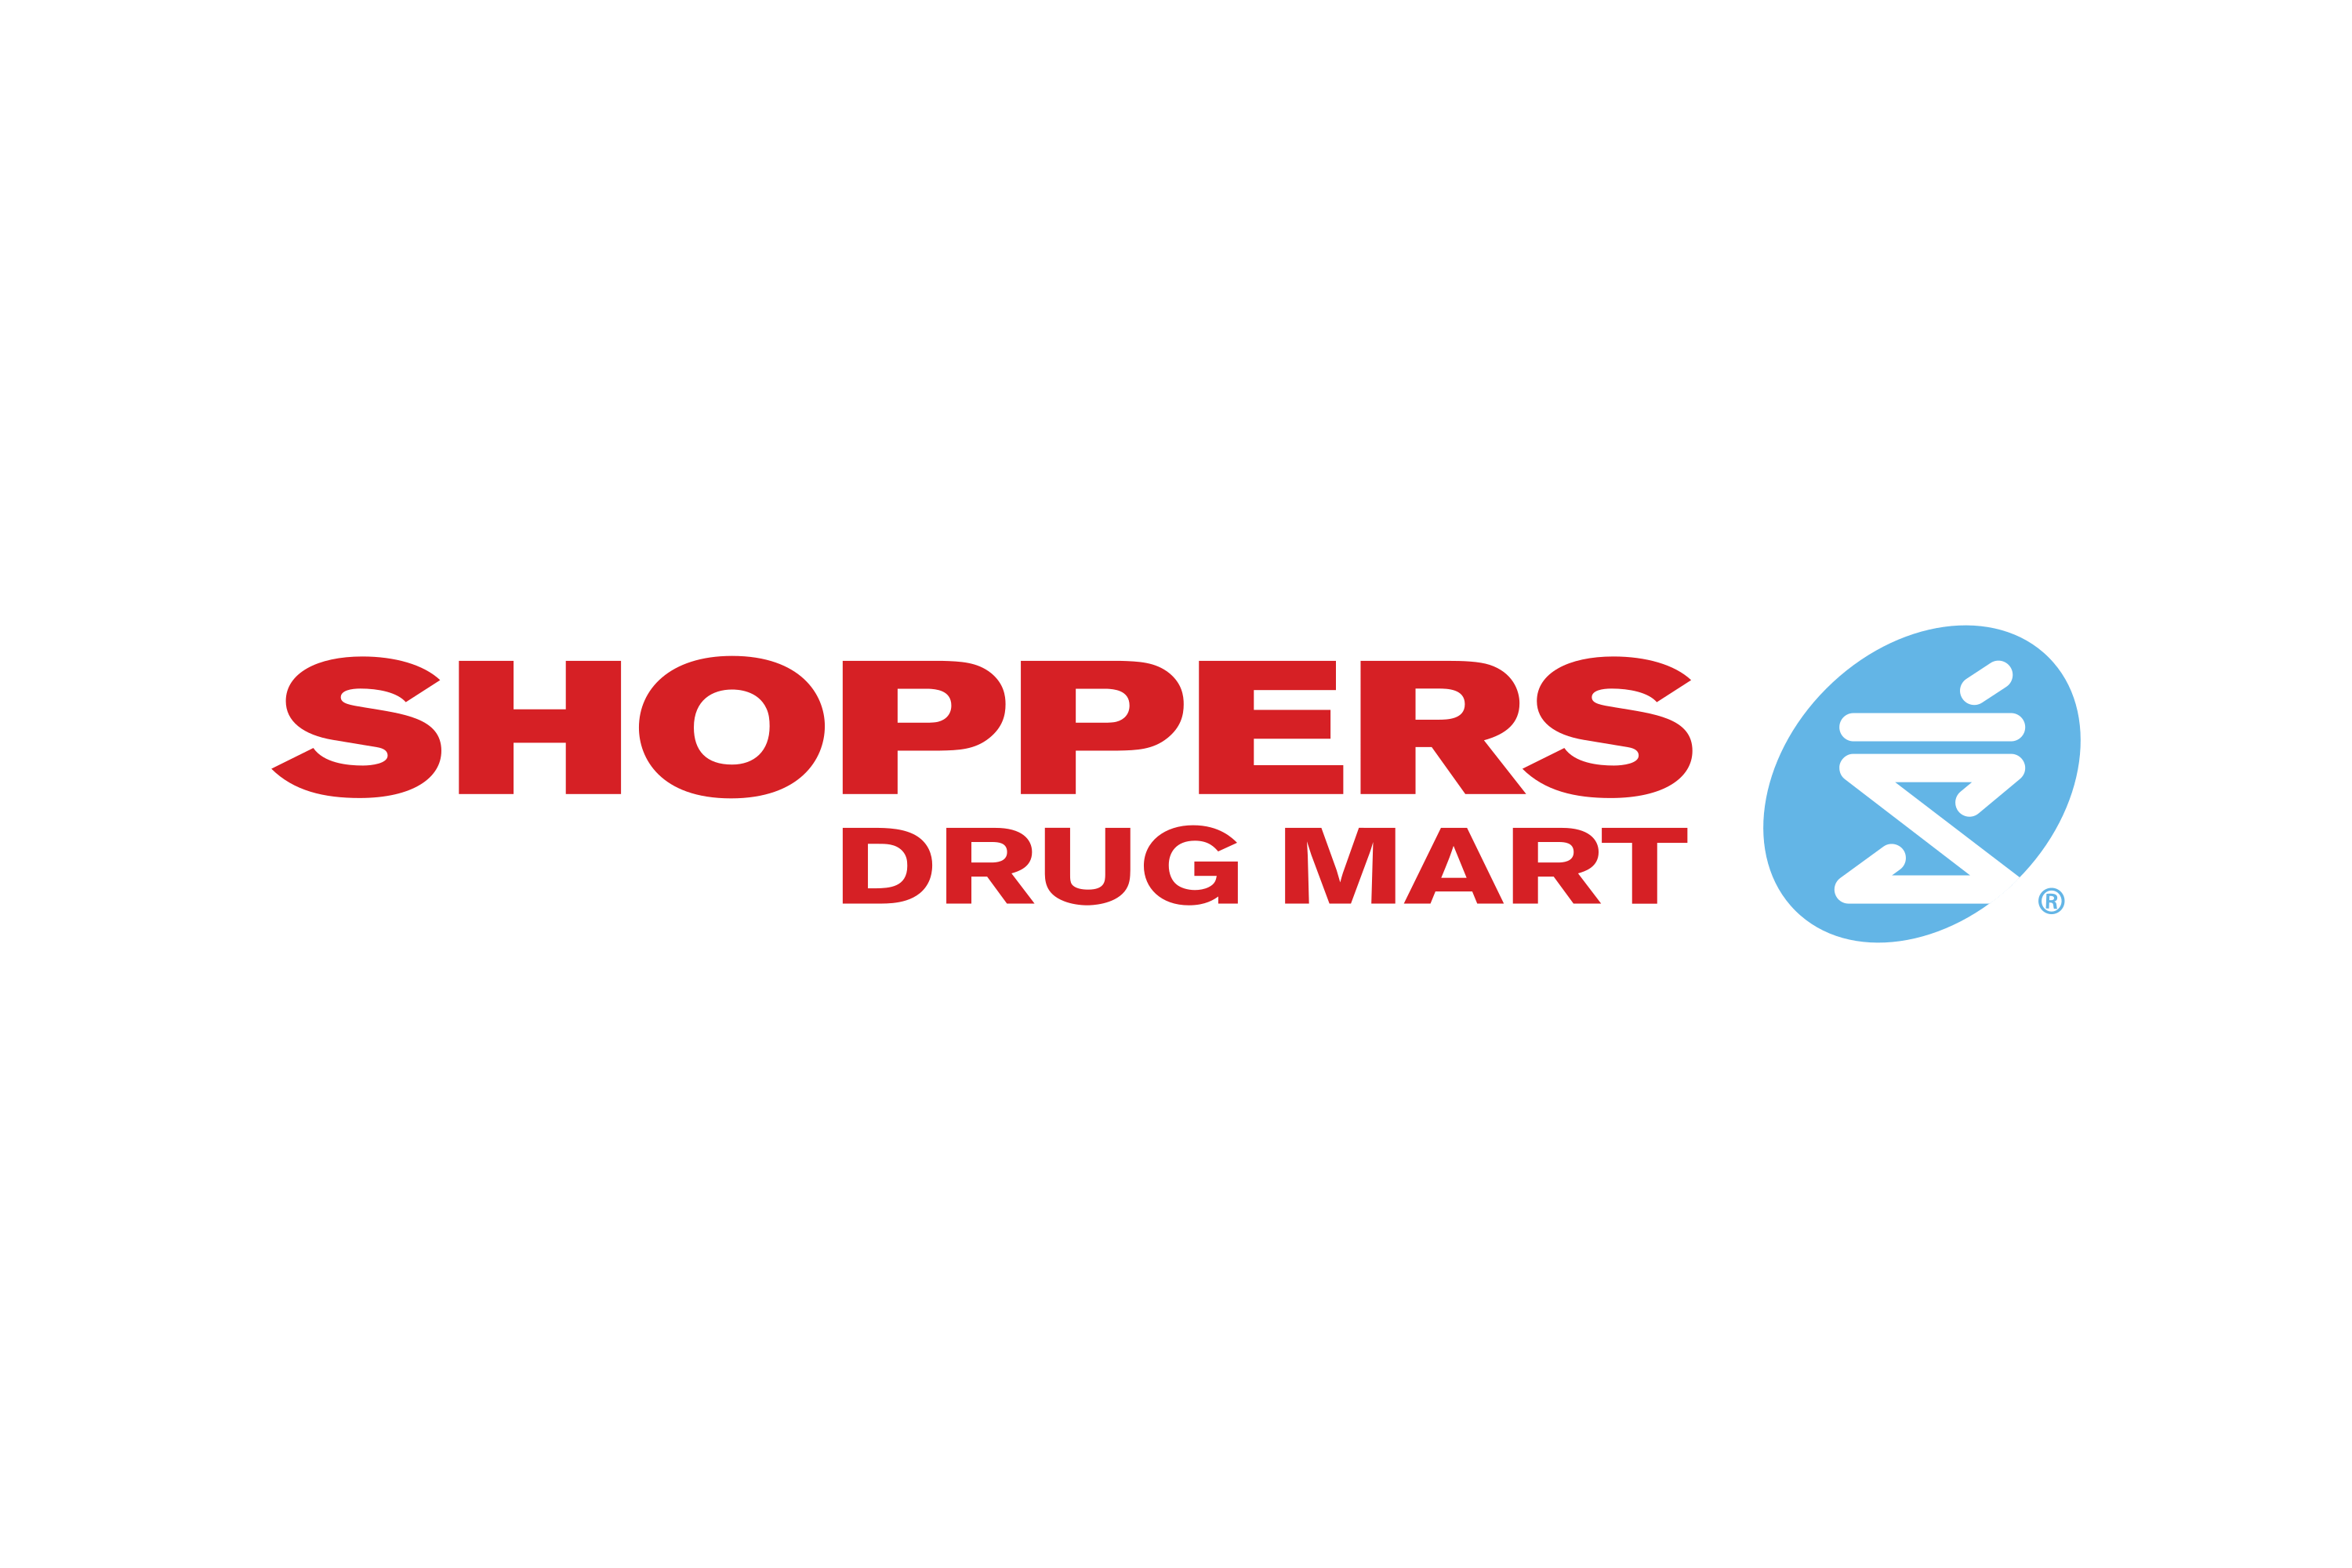 Download Shoppers Drug Mart (Pharmaprix) Logo in SVG Vector or PNG File Format - Logo.wine